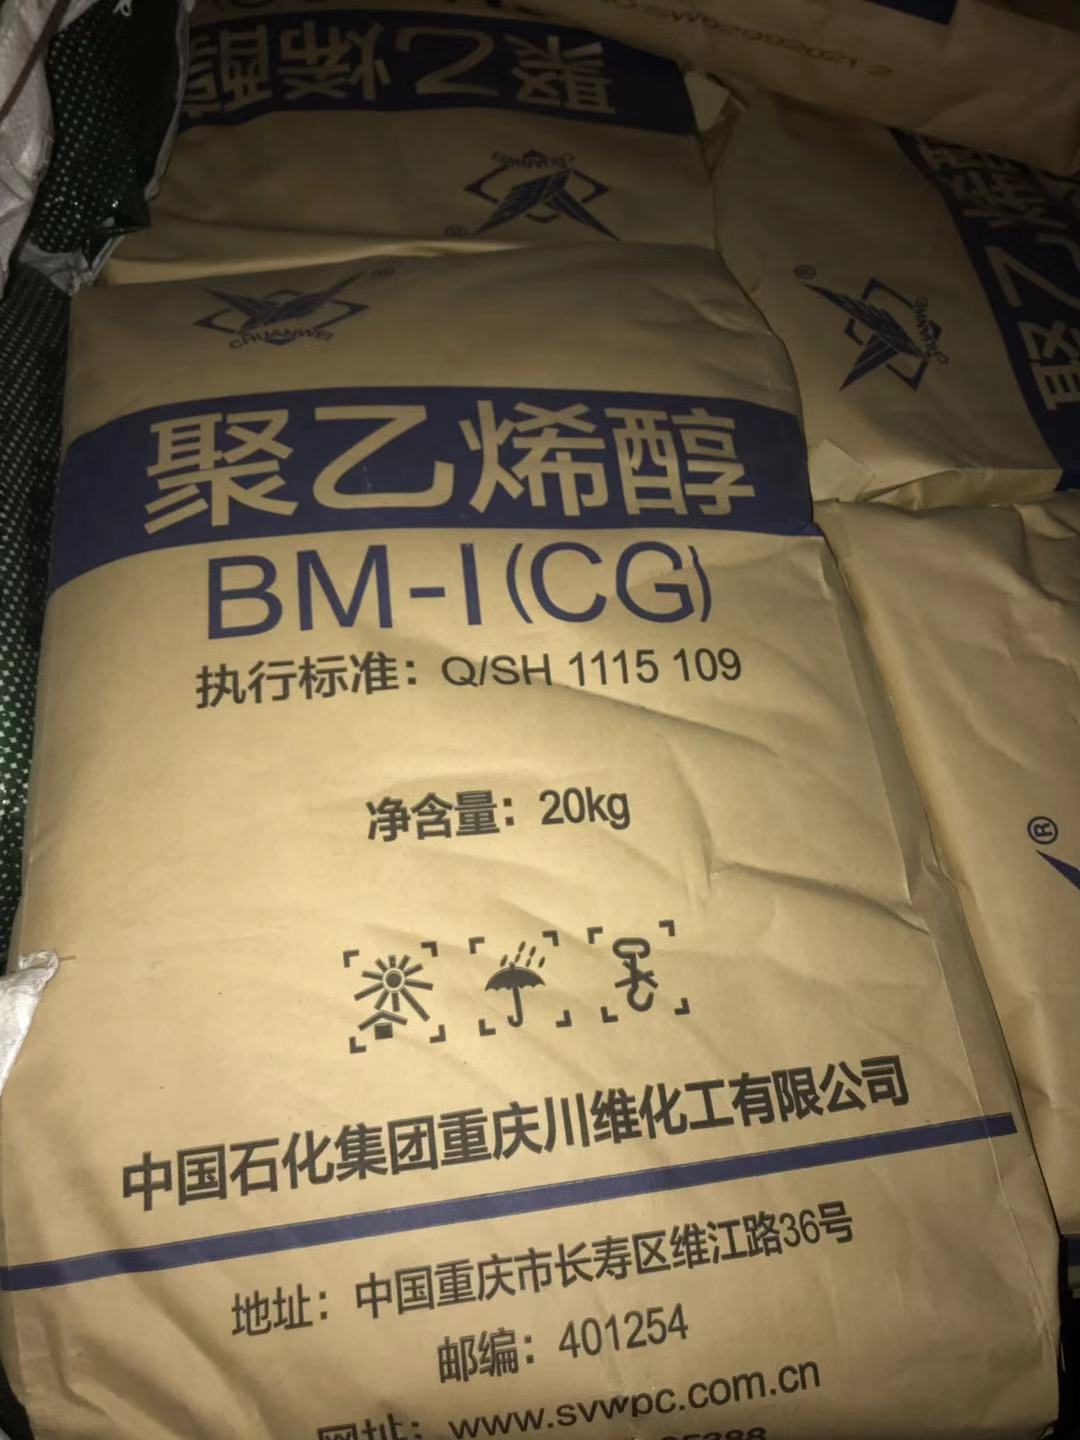 川维 聚乙烯醇BM-1  现货 颗粒/粉状/   现货